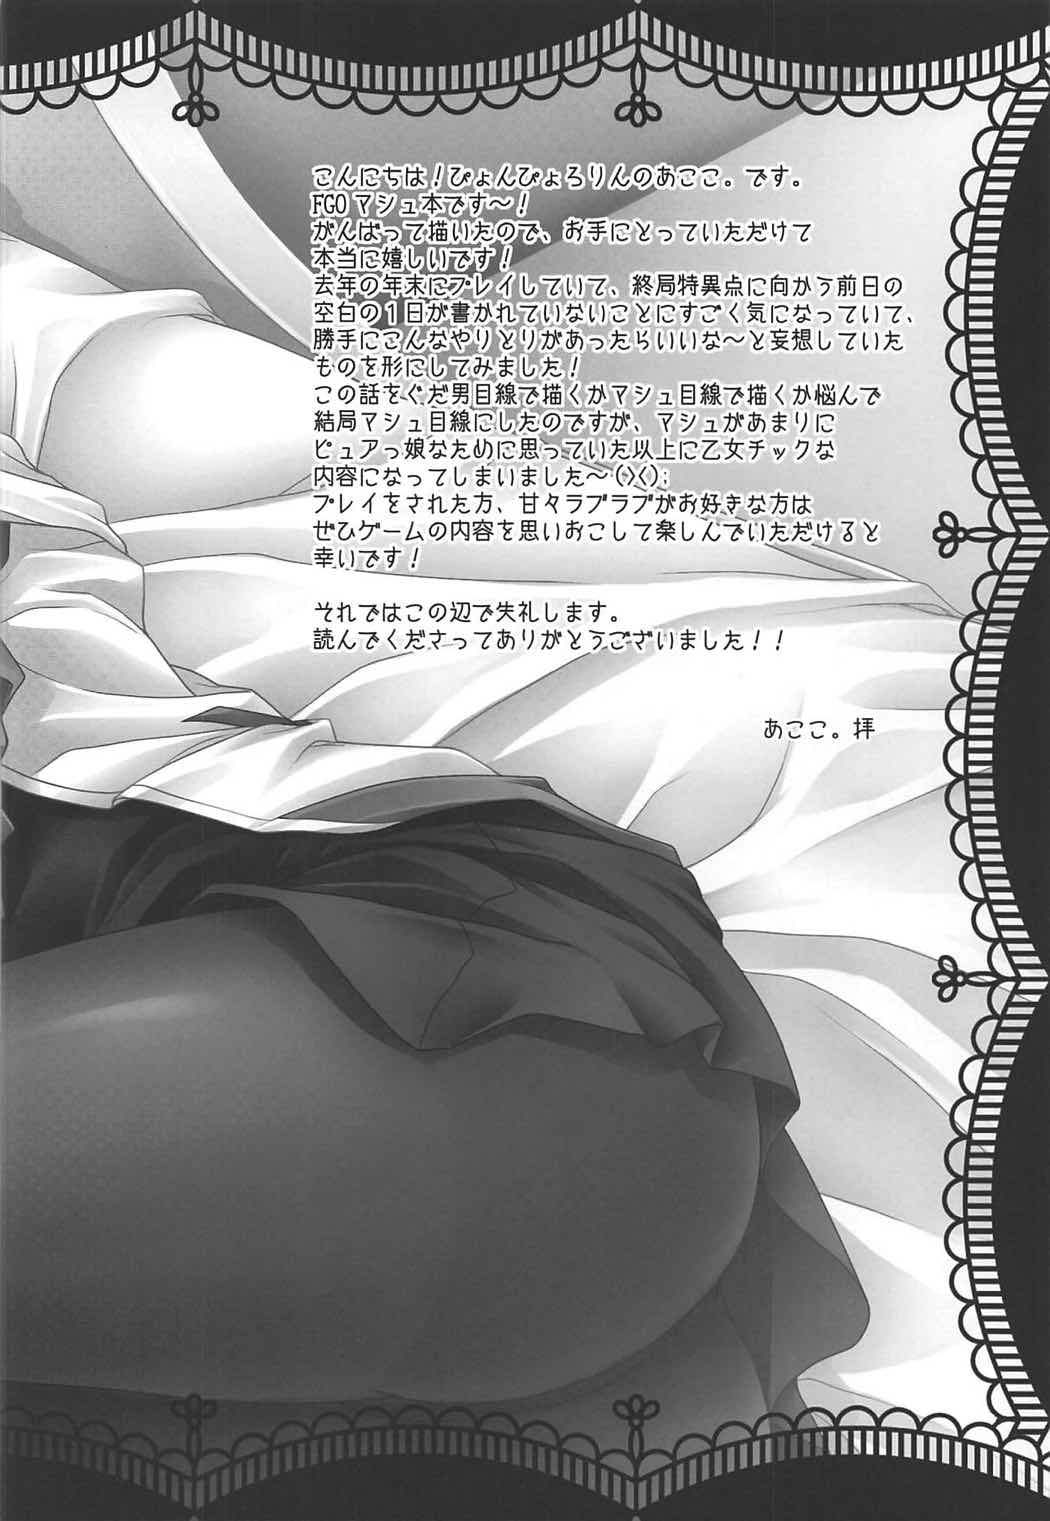 (COMIC1☆11) [ぴょんぴょろりん (あここ。)] - 1 day ago - (Fate/Grand Order)